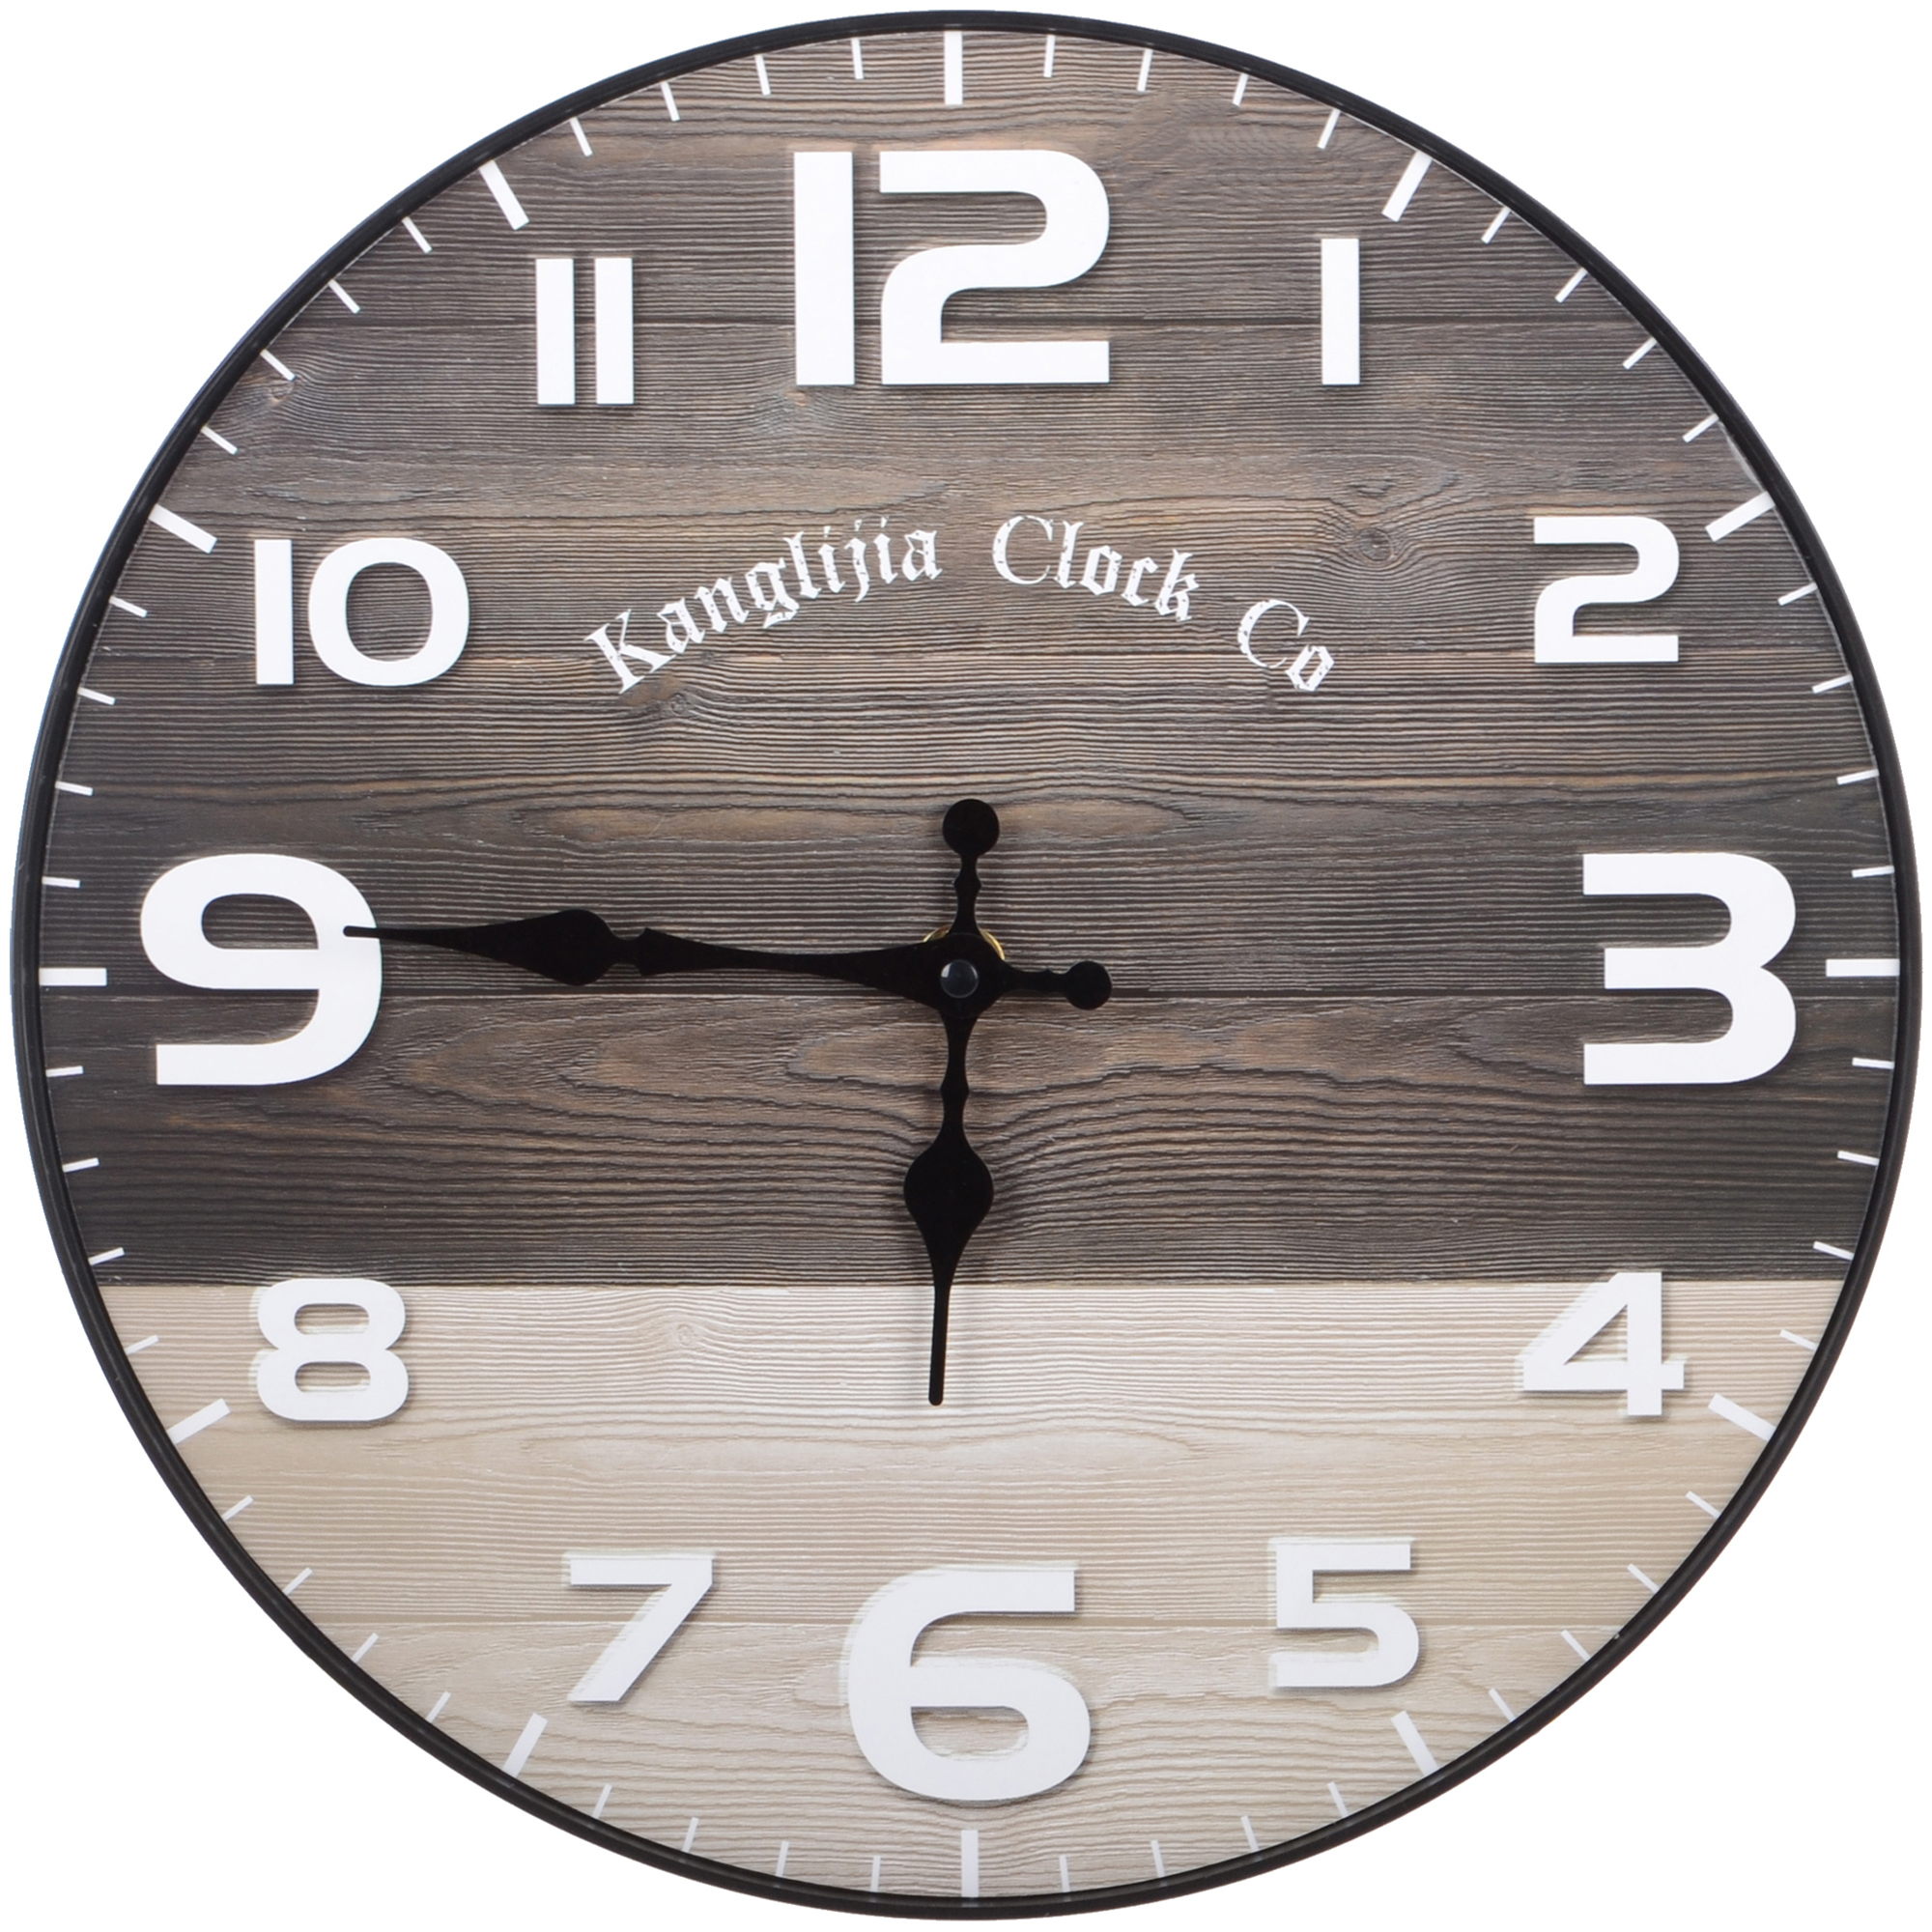 Часы настенные Kanglijia Clock коричневые 29,5х29,5х3,5 см